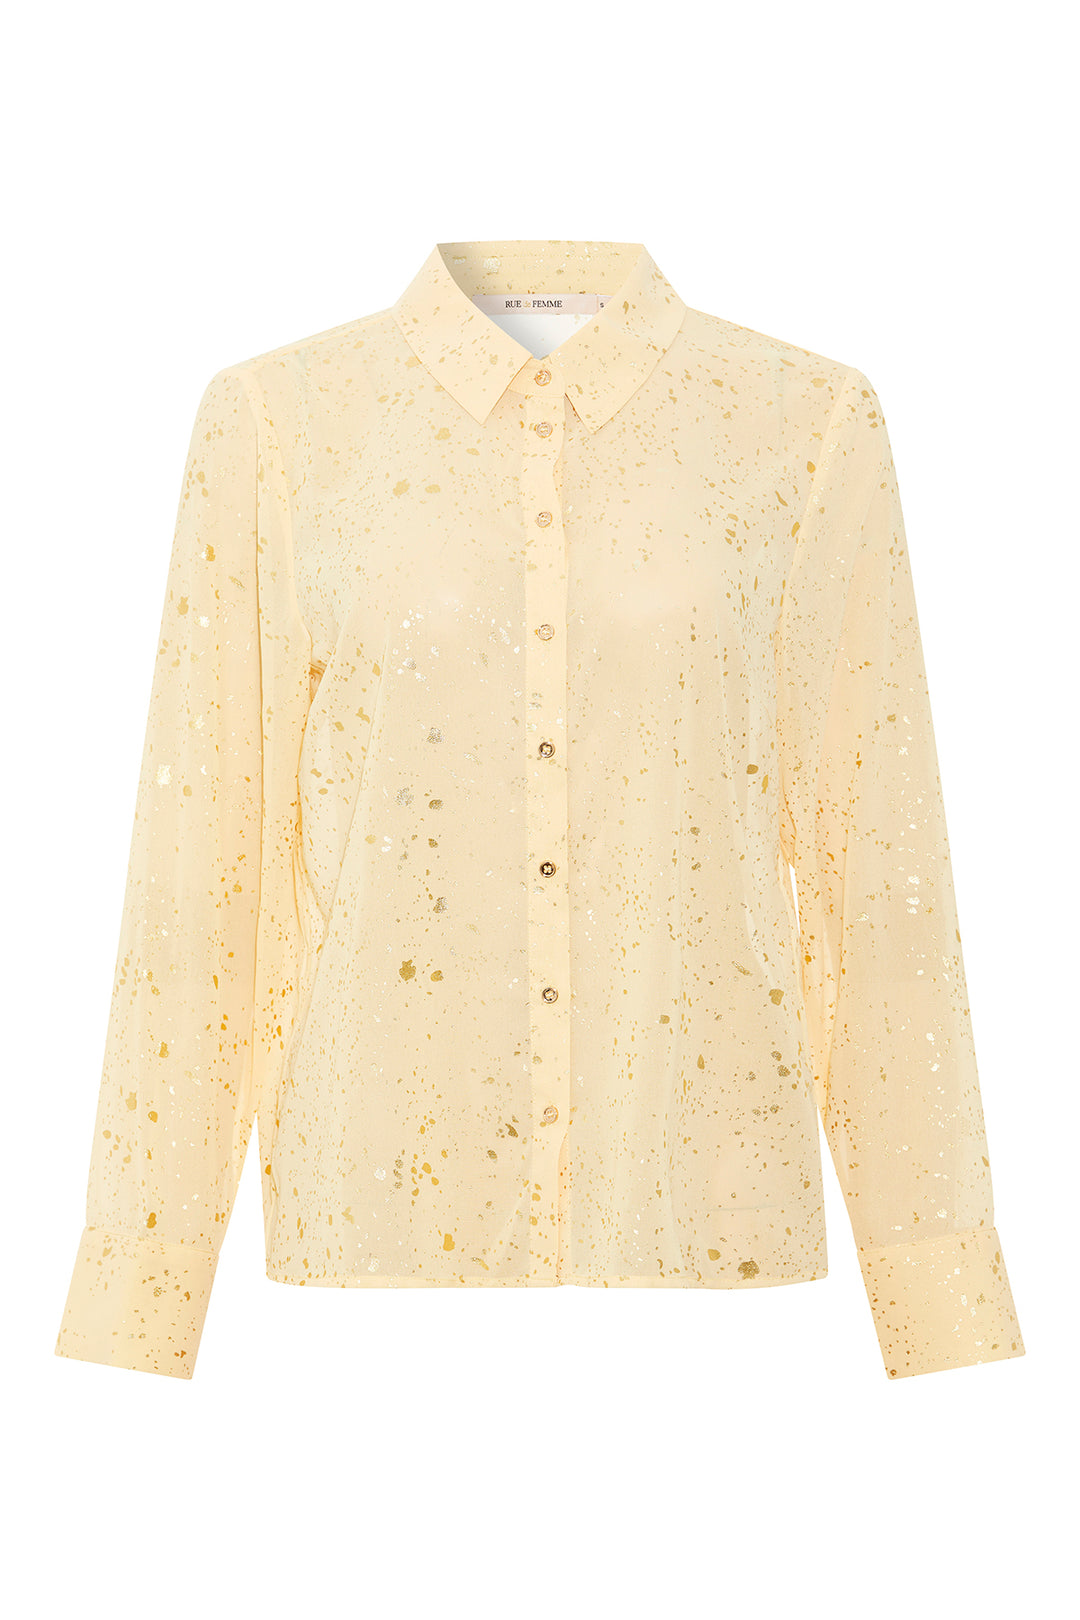 Rue de Femme Shivani shirt RdF SHIRTS 716 Mellow yellow